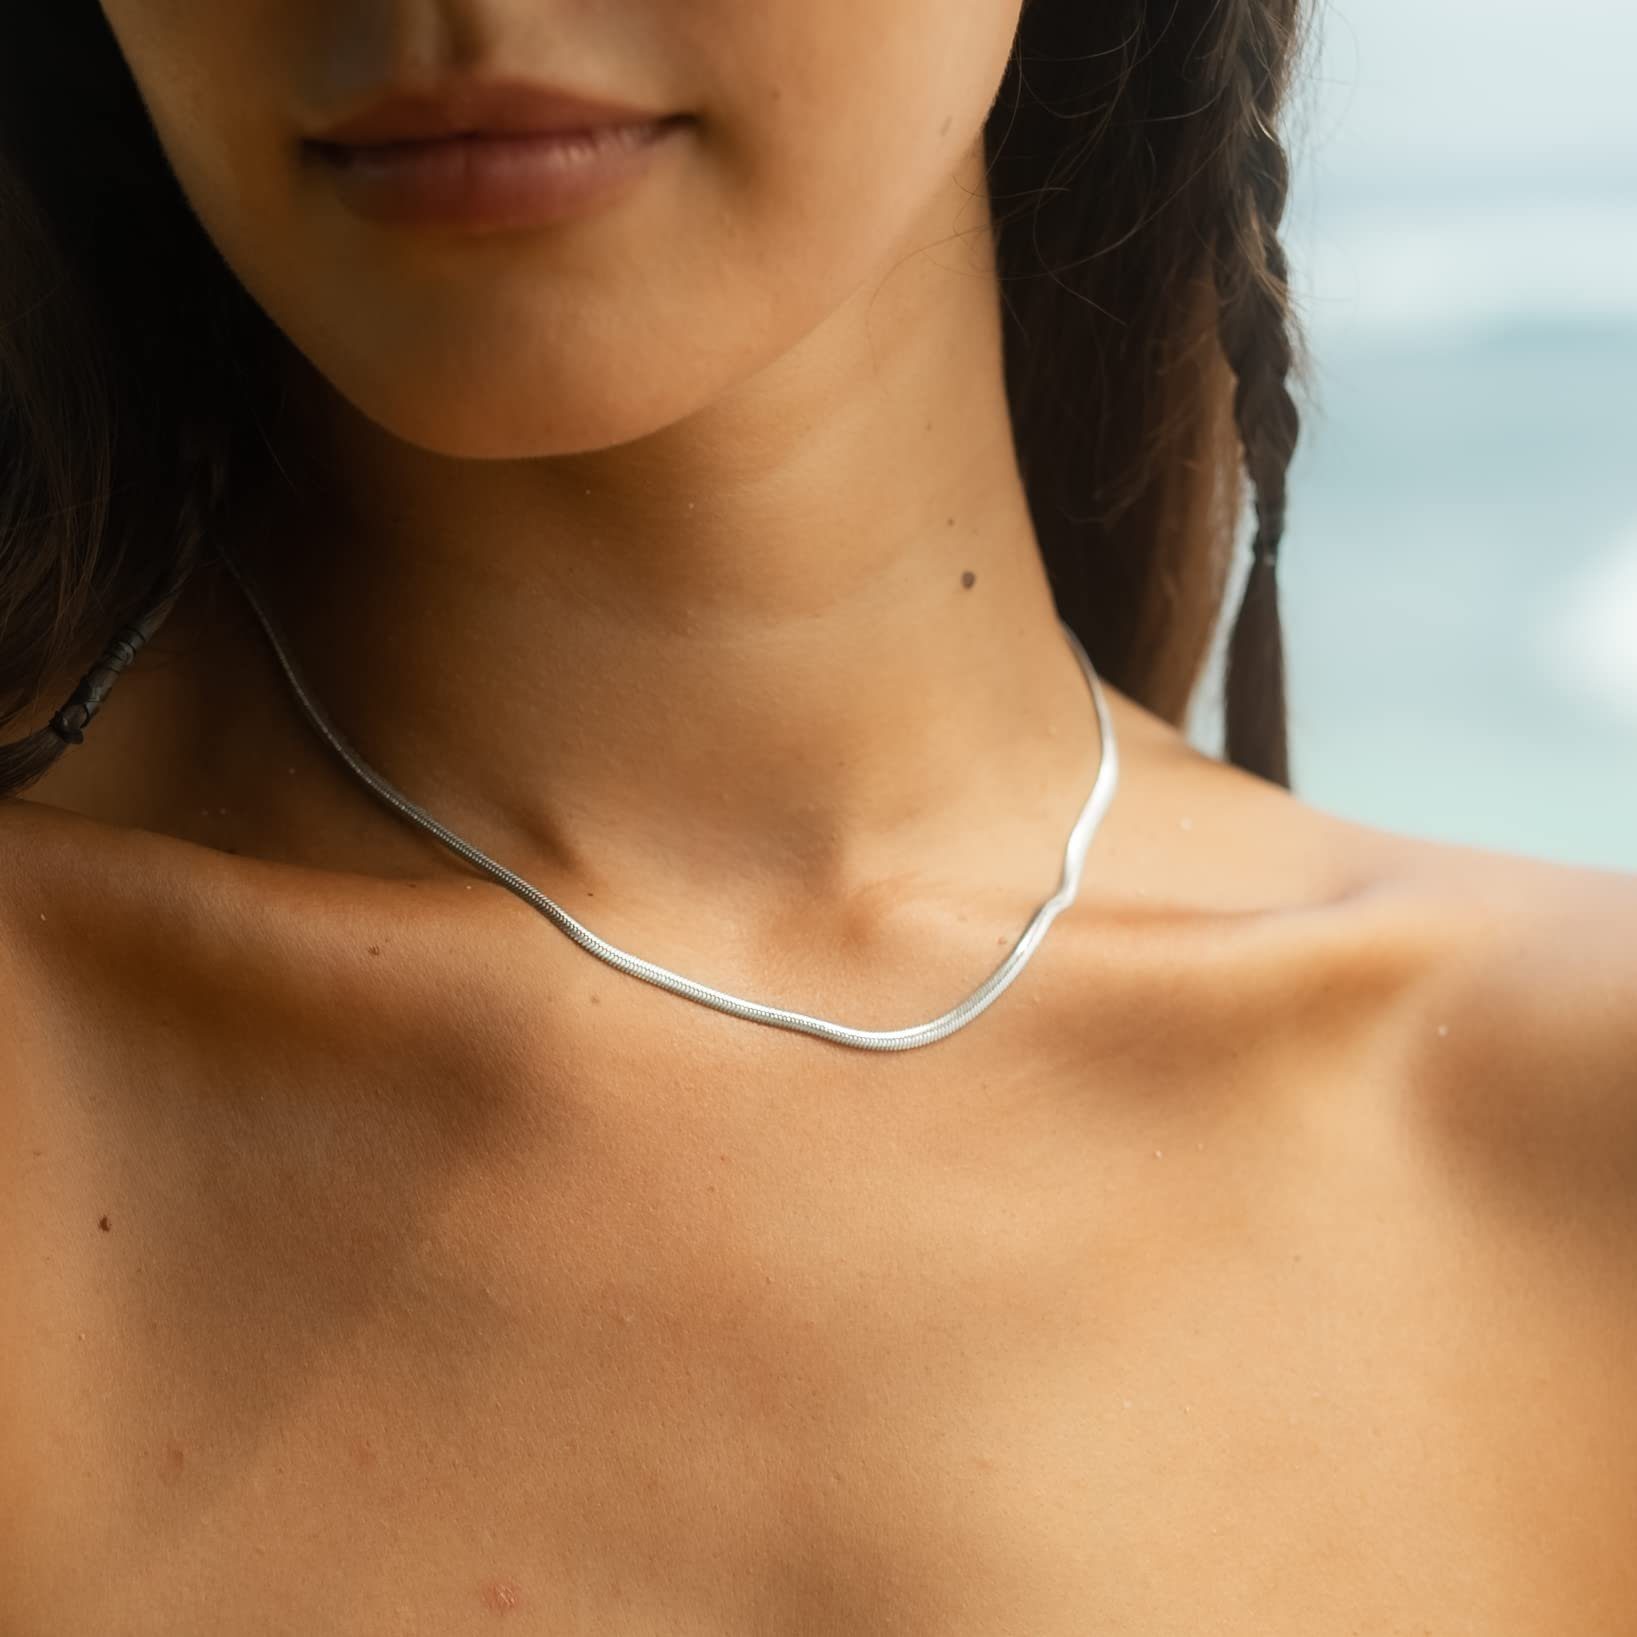 Made by Nami Schlangenkette Halskette mit starkem Karabiner-Verschluss, Choker Halskette Edelstahl 3mm Gliederkette Silber